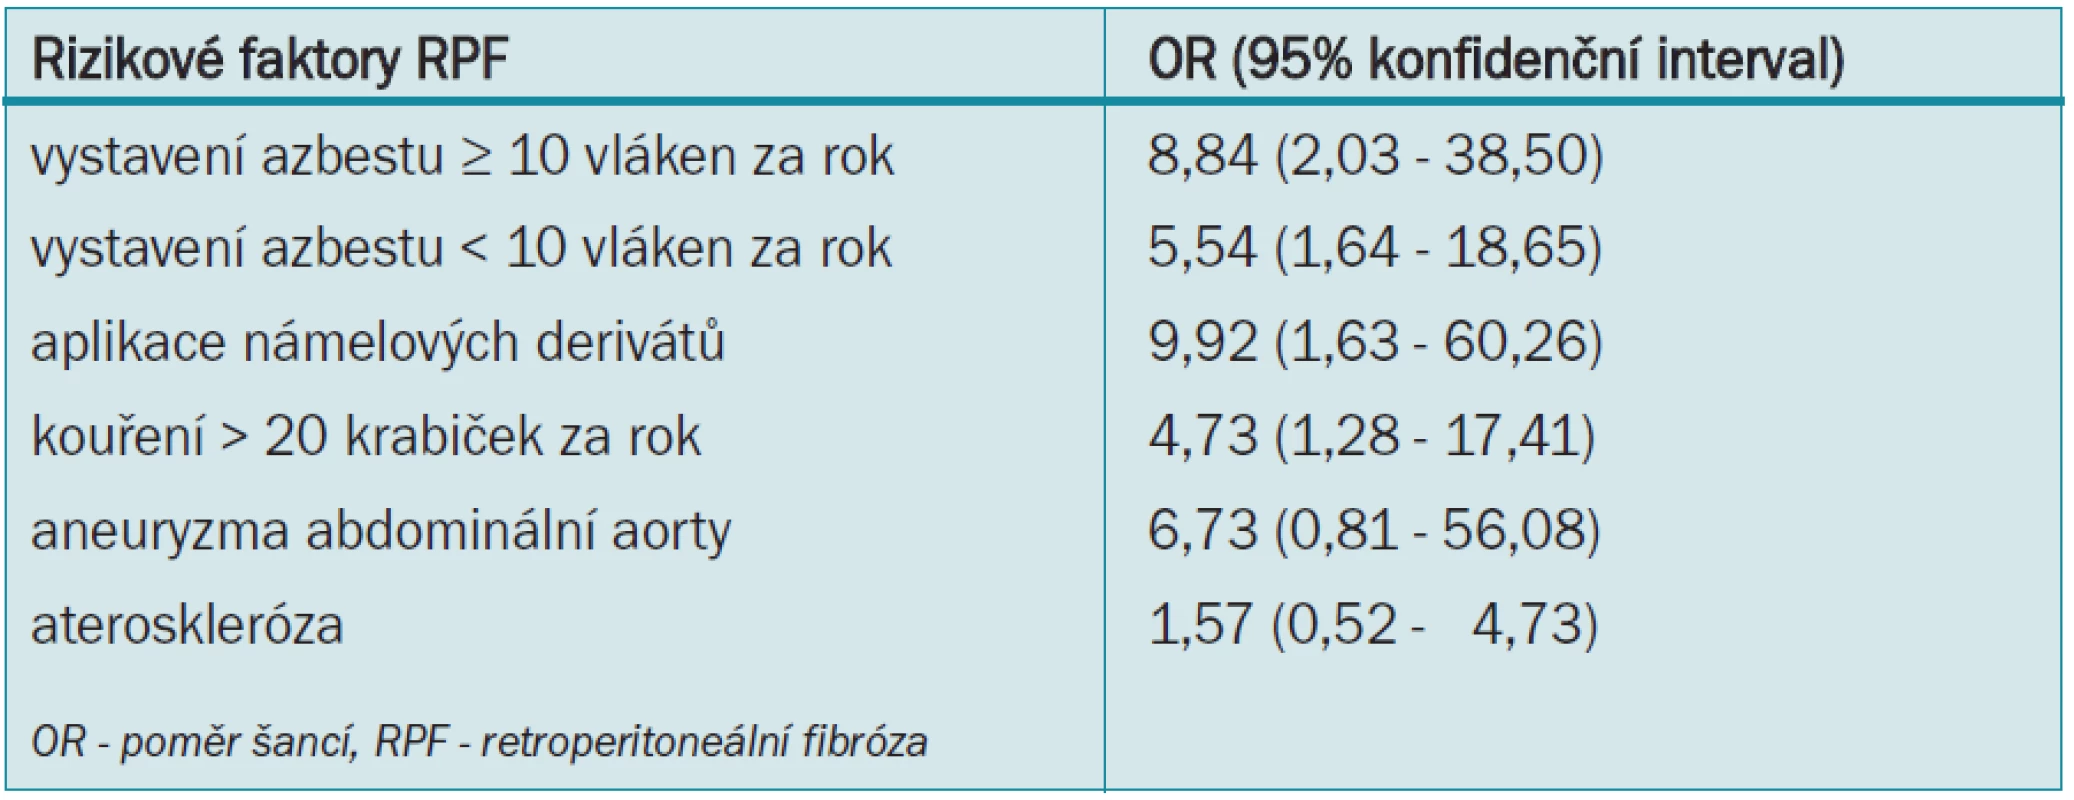 Přizpůsobená OR pro rizikové faktory RPF v případové kontrolní studii.
Uveřejněno se svolením [10].